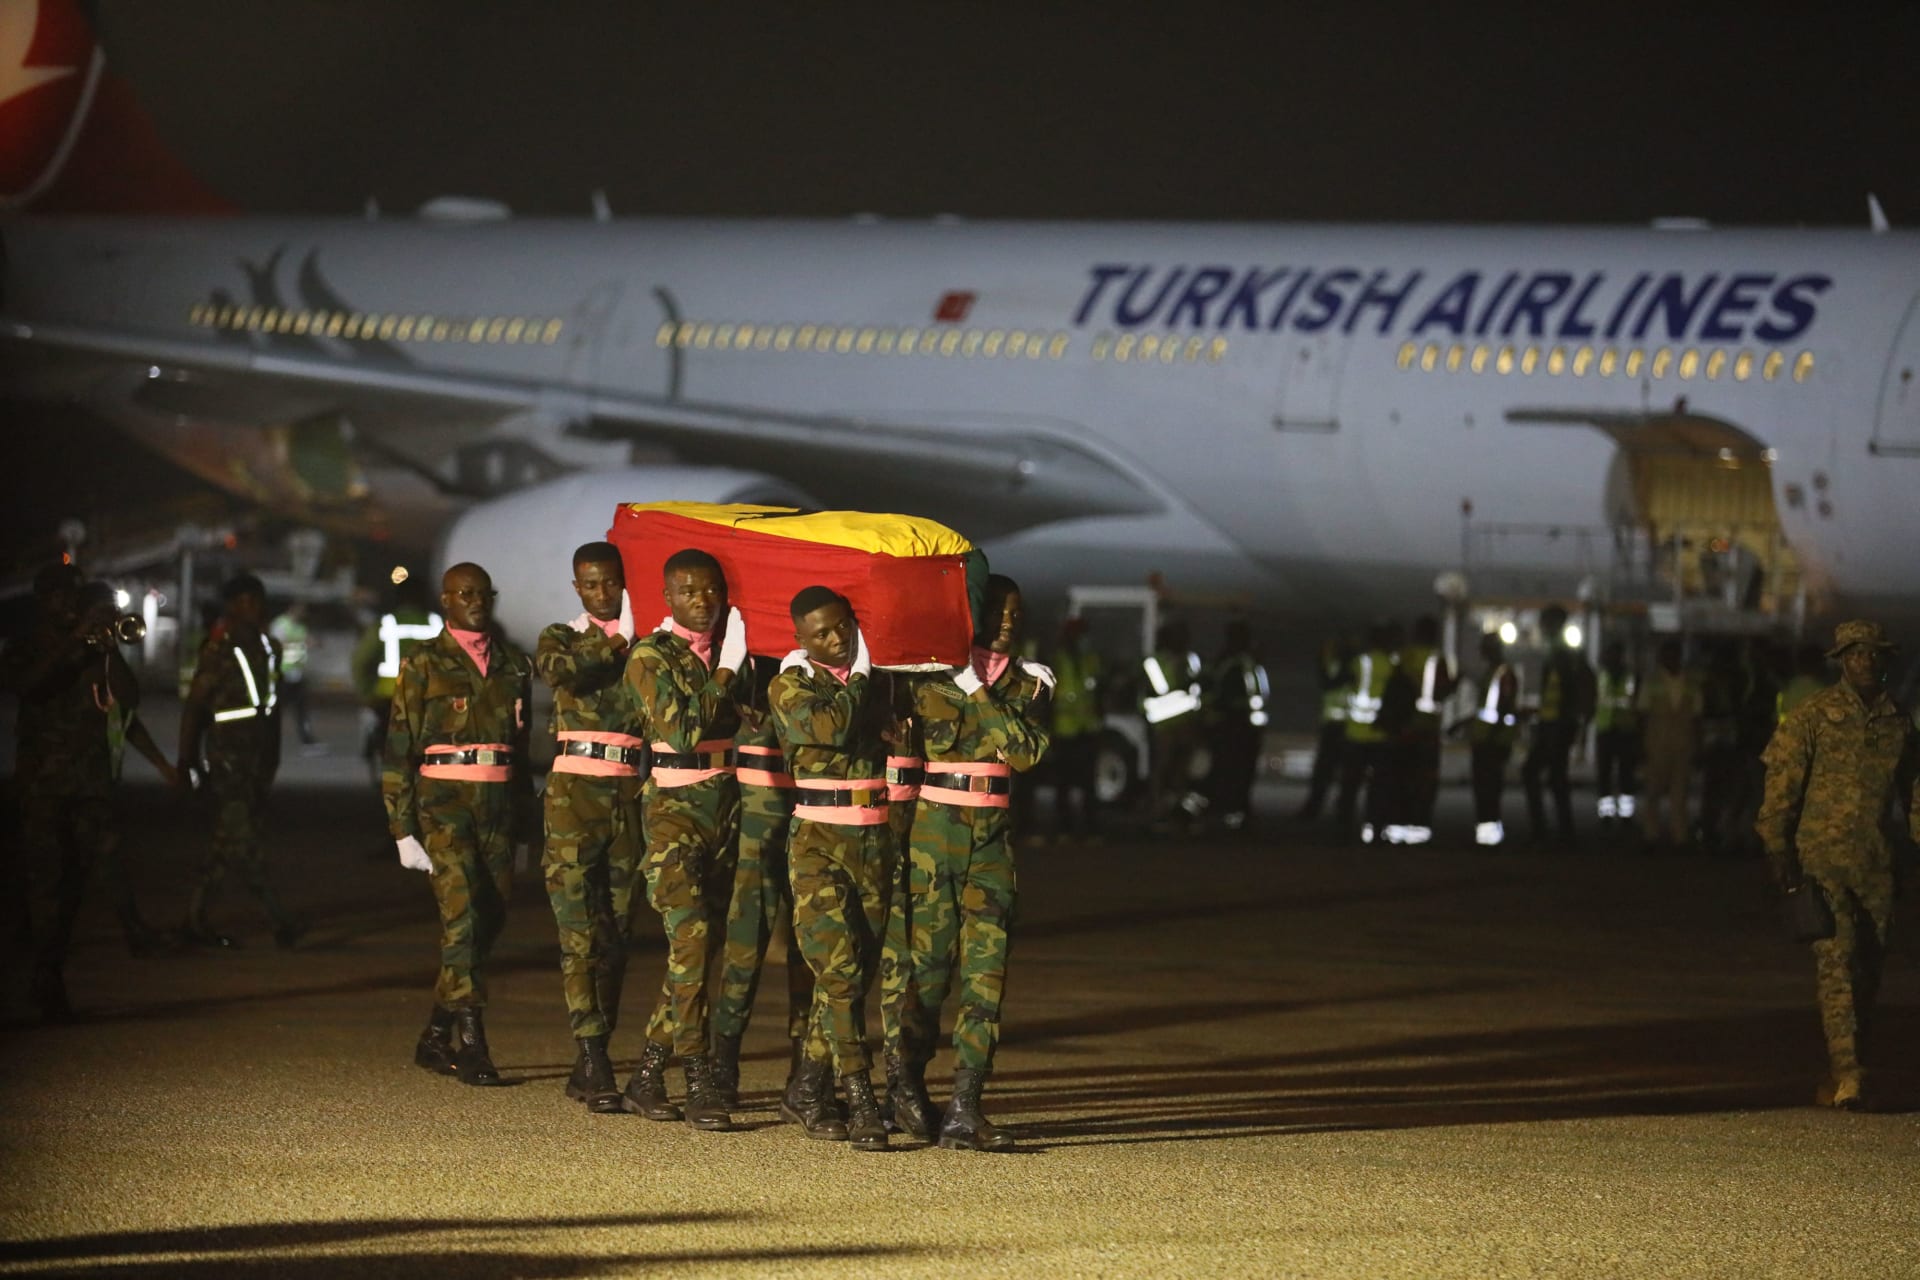 وصول جثمان اللاعب الغاني كريستيان أتسو إلى بلاده بعد مقتله في زلزال تركيا